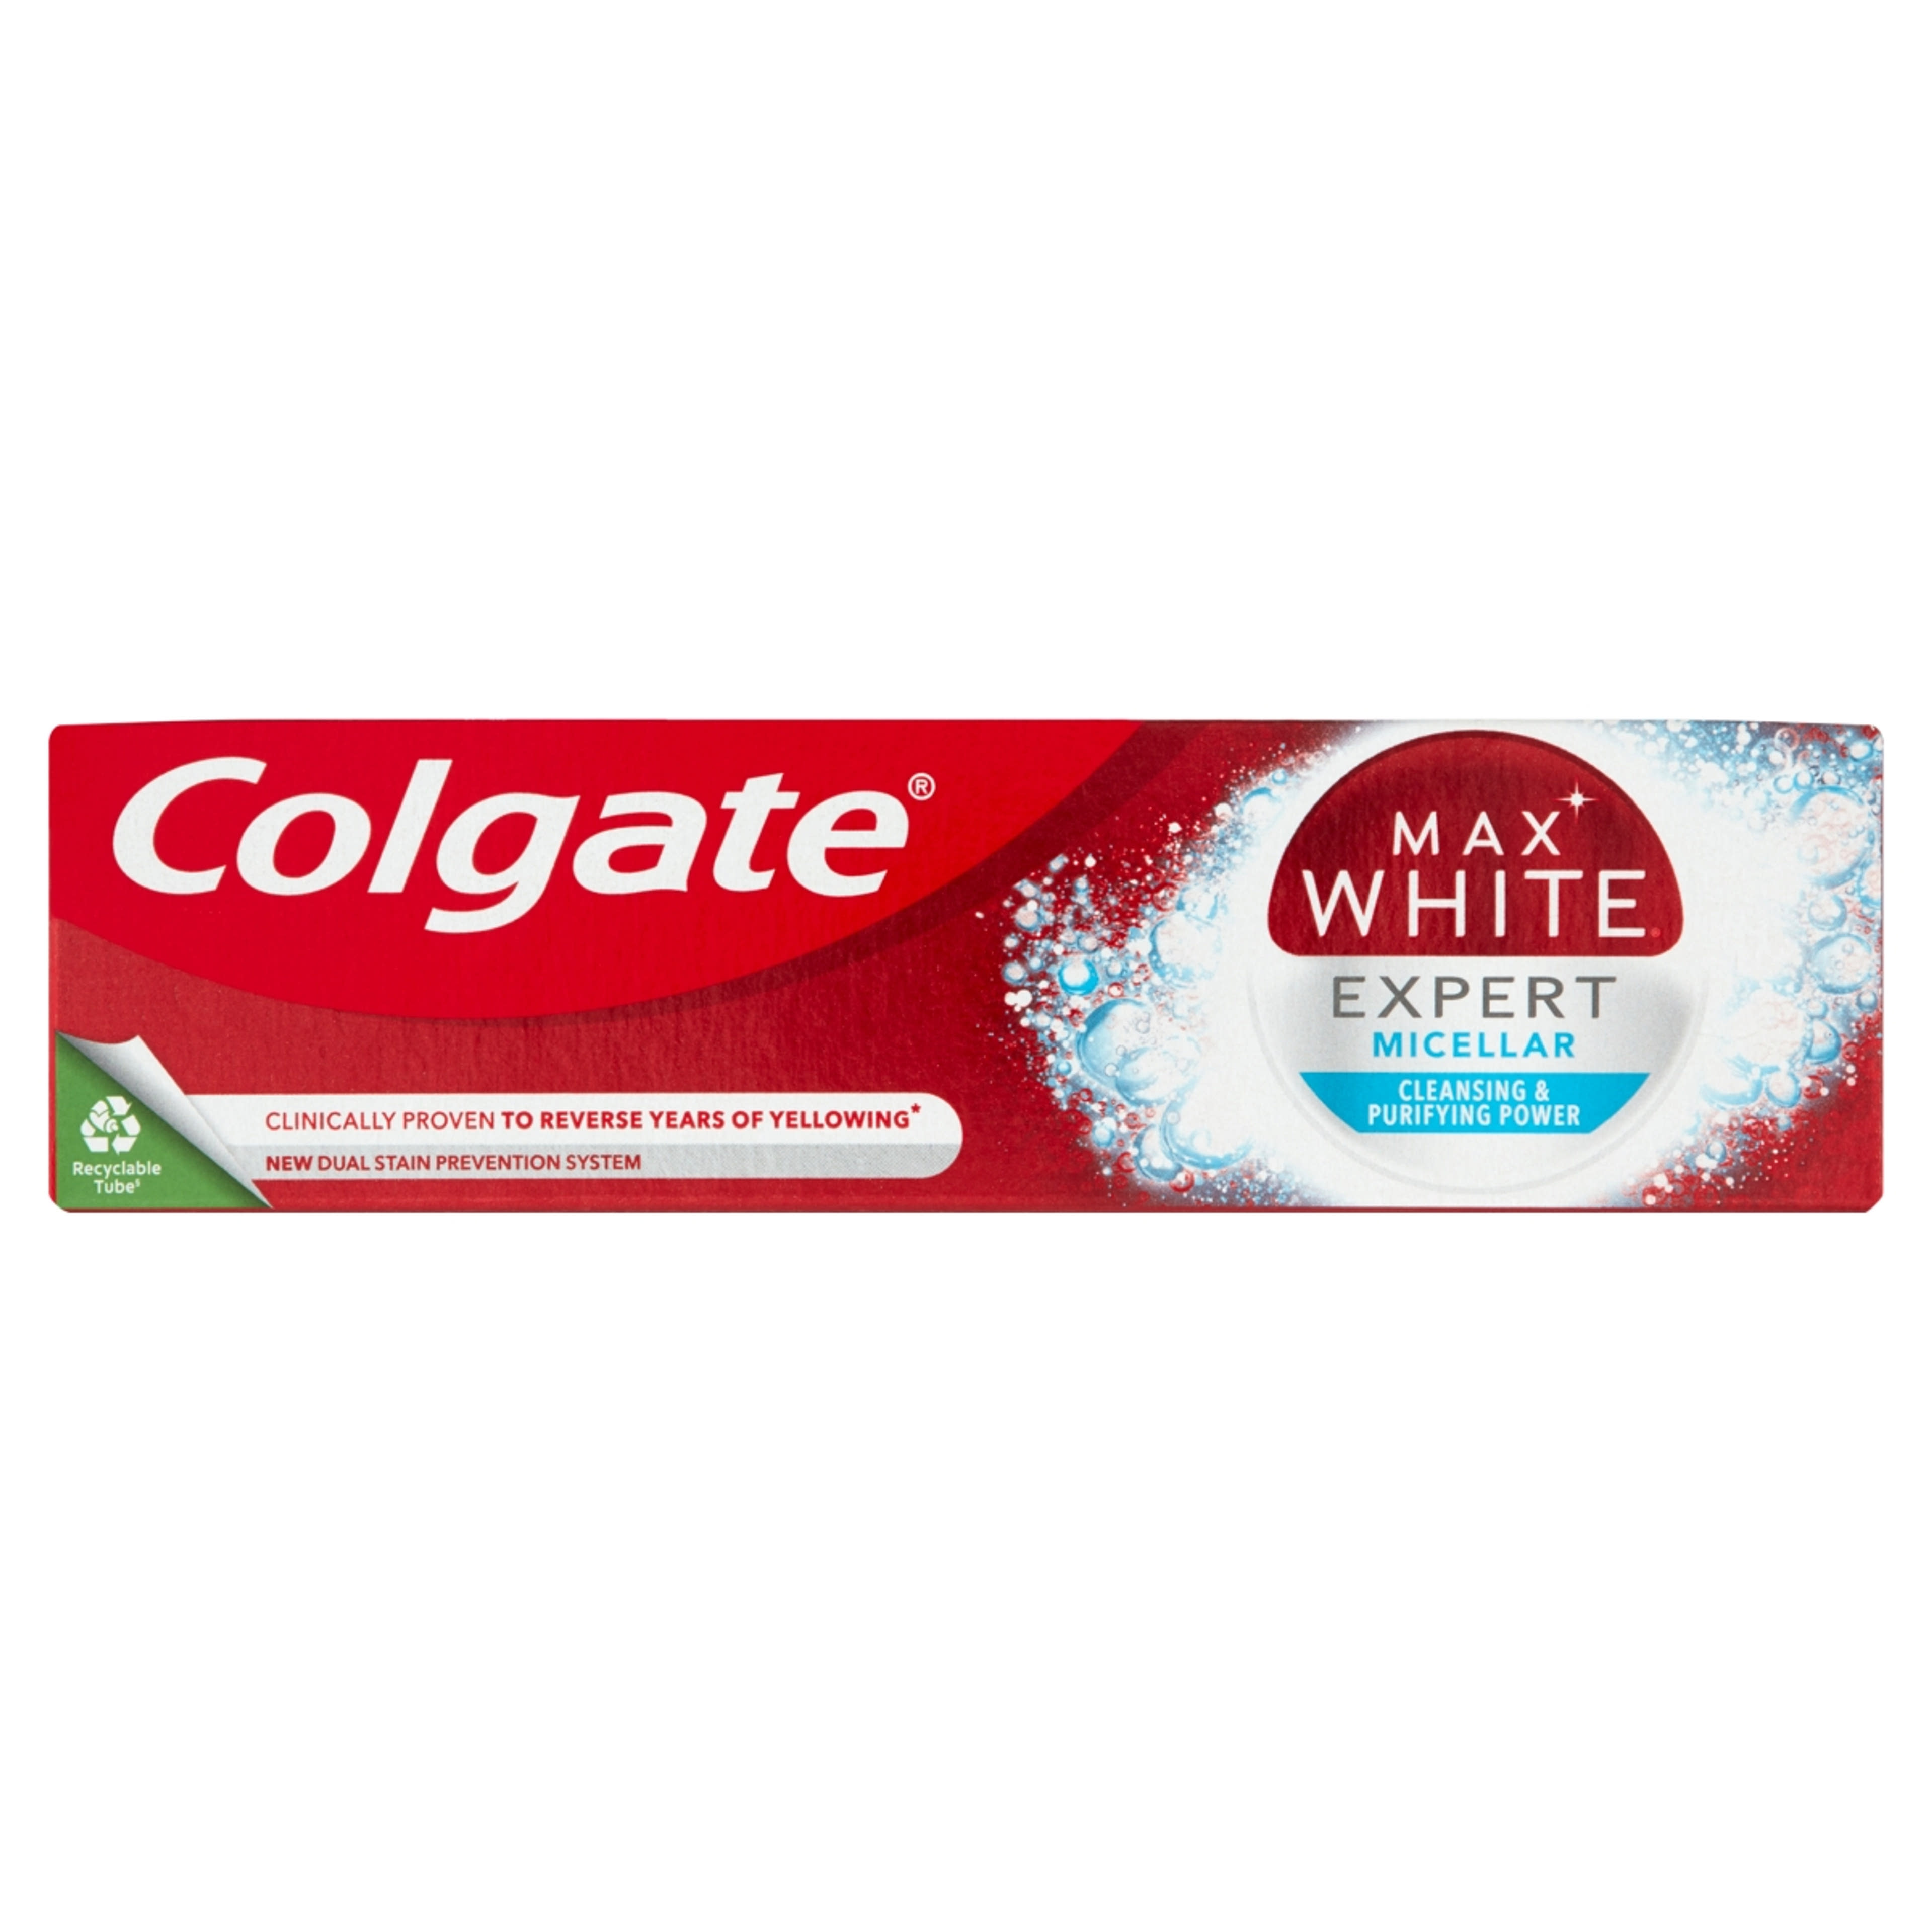 Colgate Max White Expert Micellar fogkrém - 75 ml